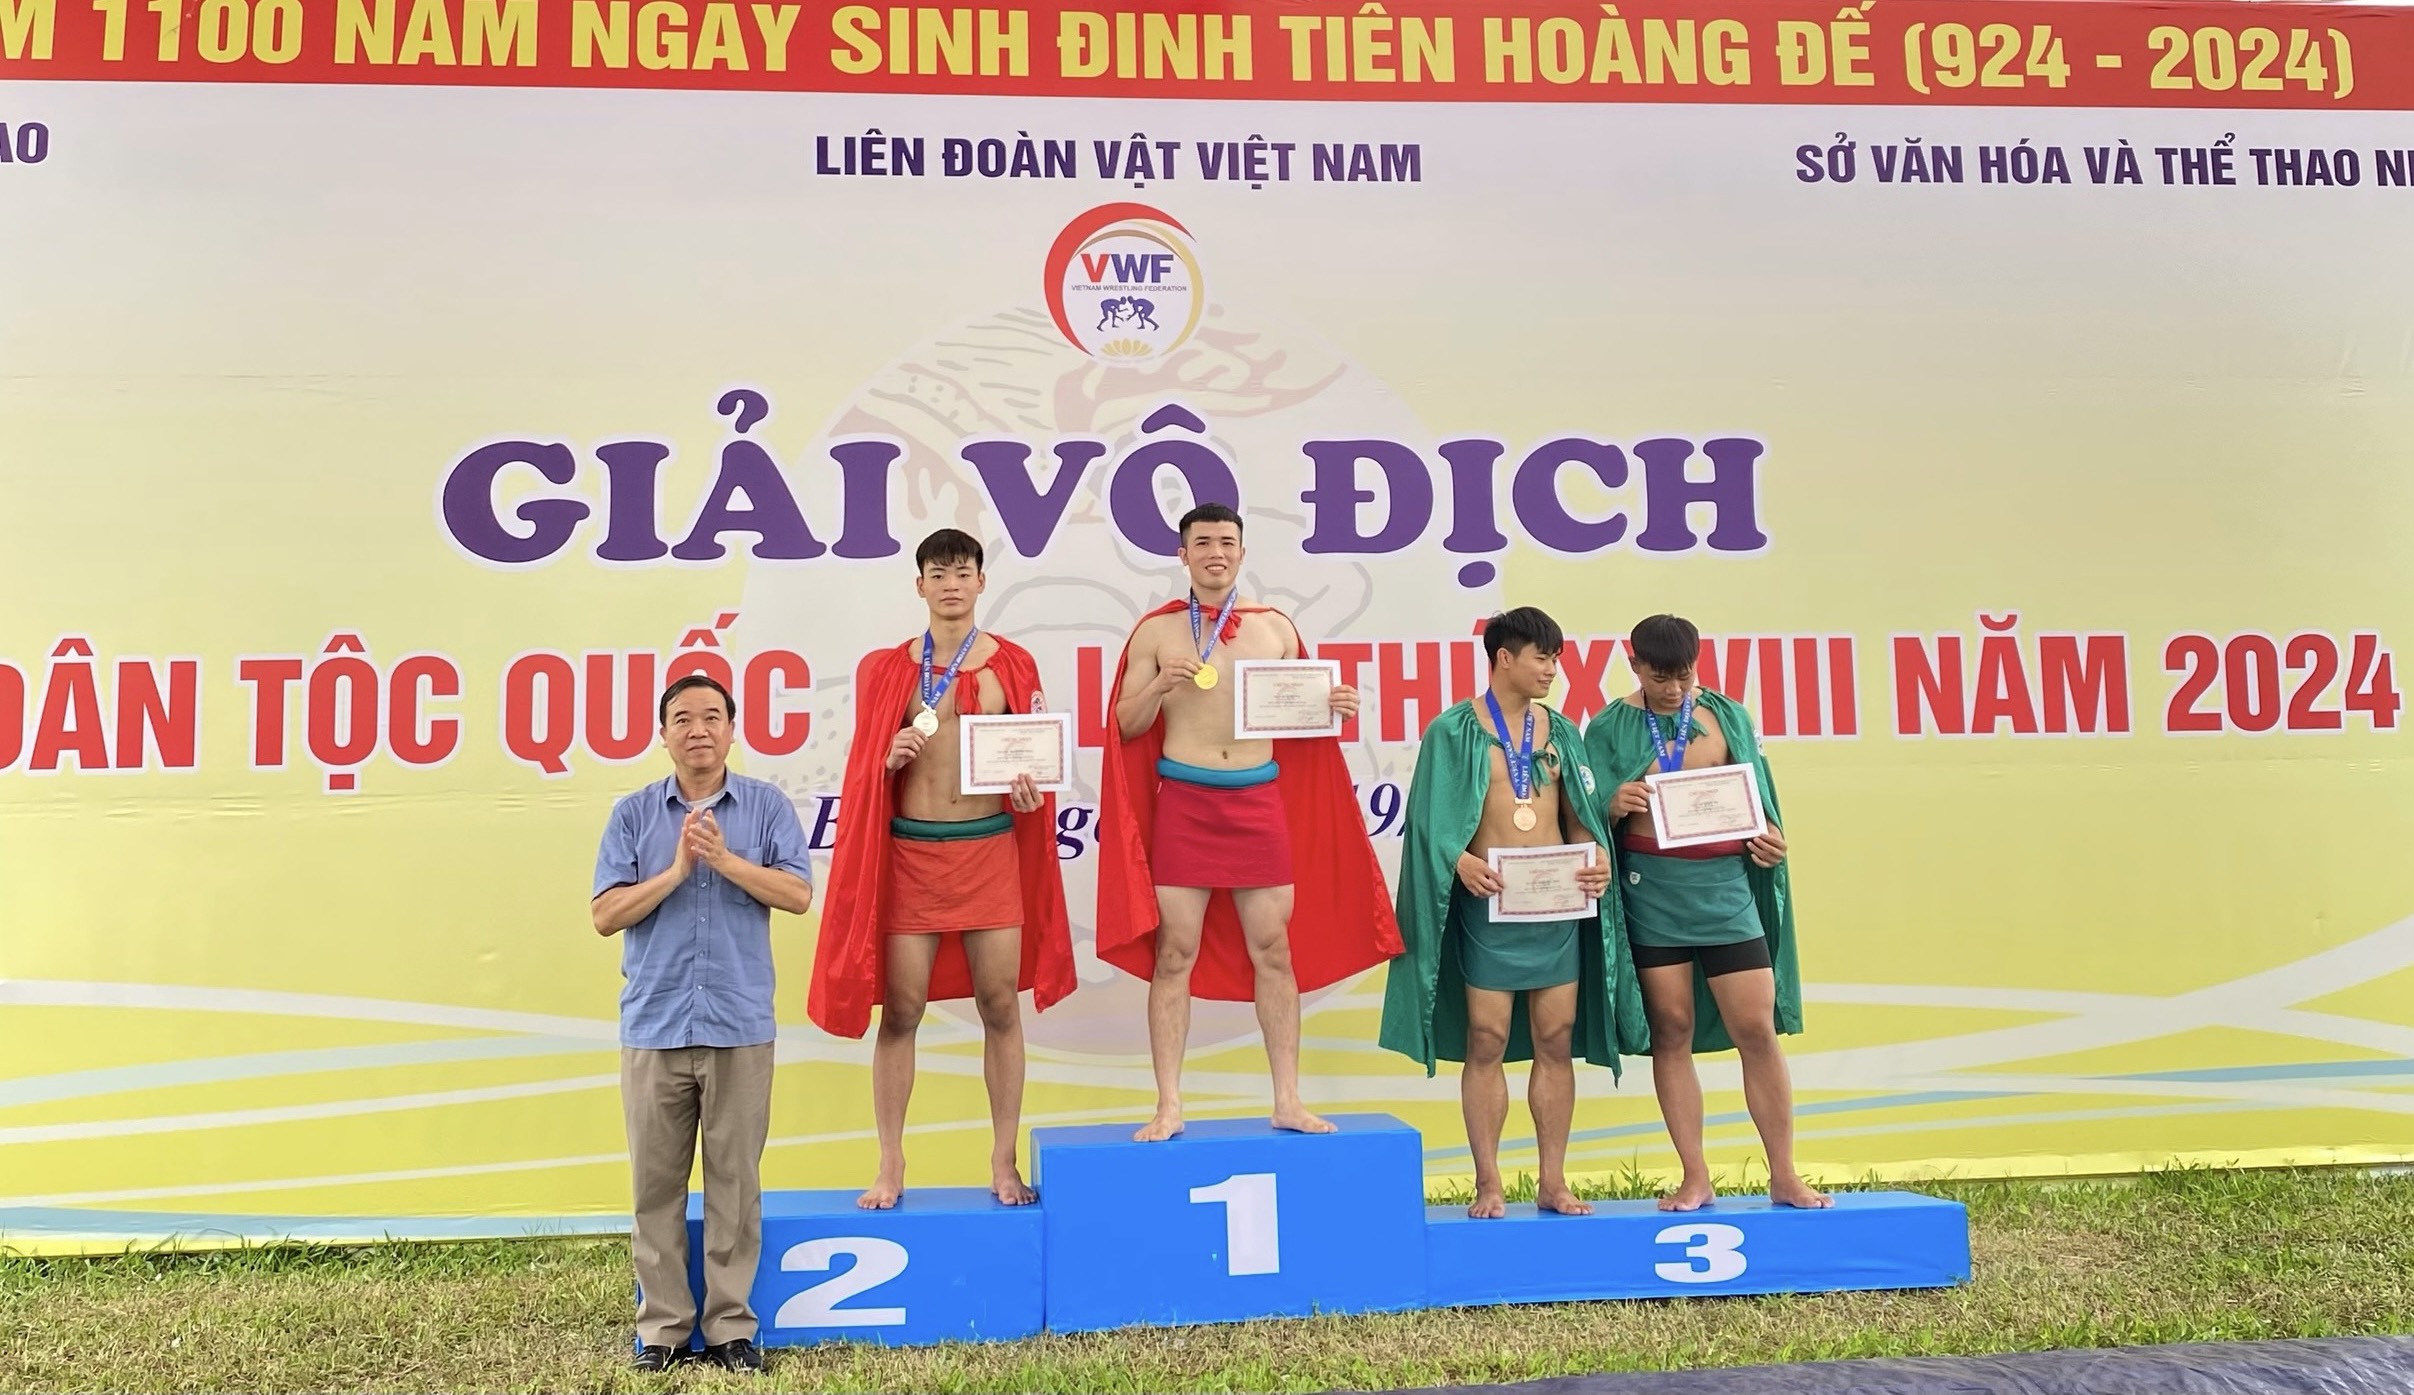 Phú Thọ giành Huy chương Vàng tại Giải Vô địch Vật dân tộc Quốc gia lần thứ 28